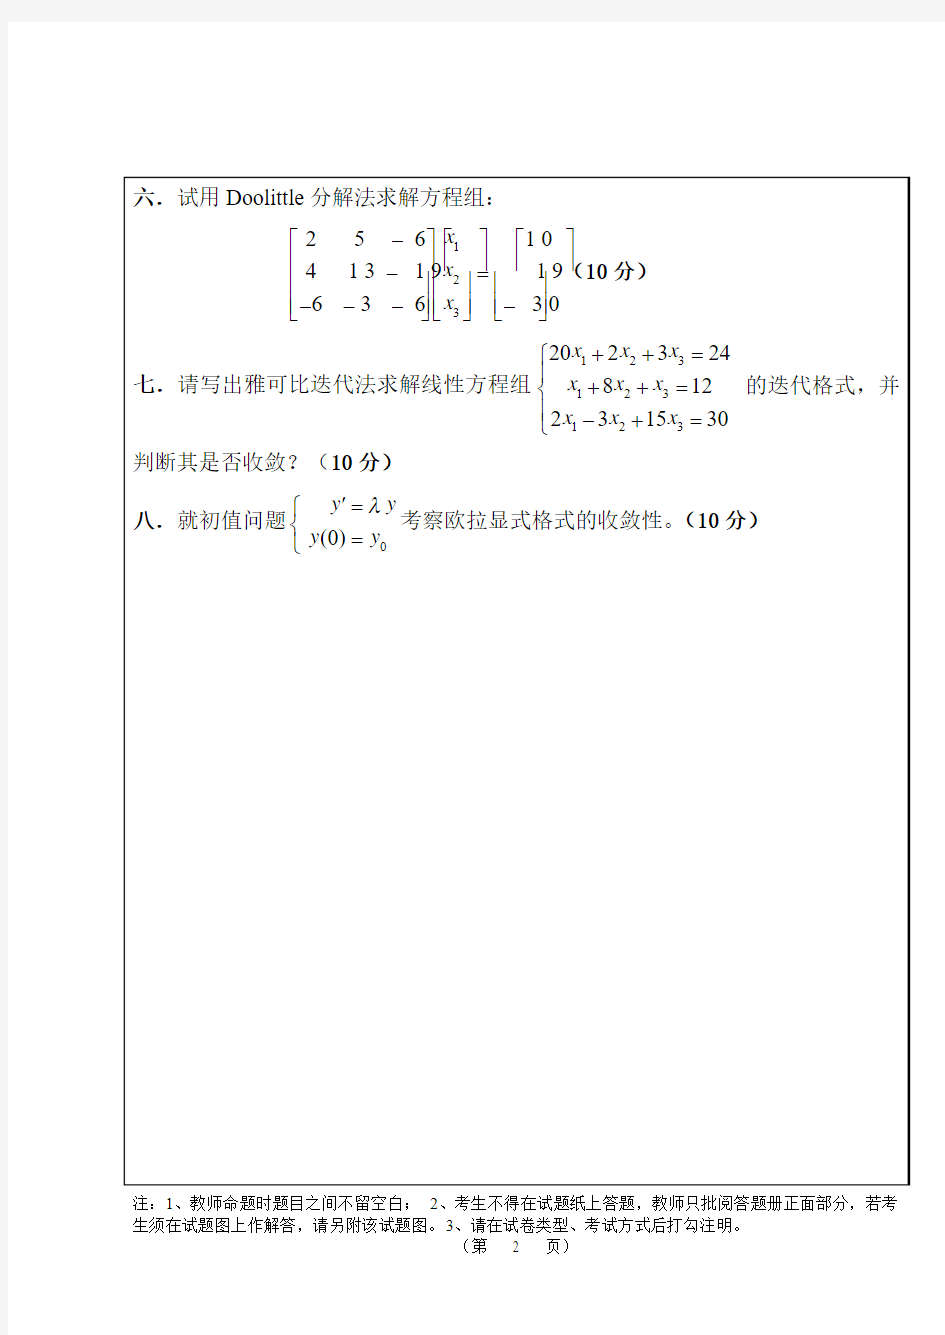 武汉大学数值分析期末考试题目和答案.pdf